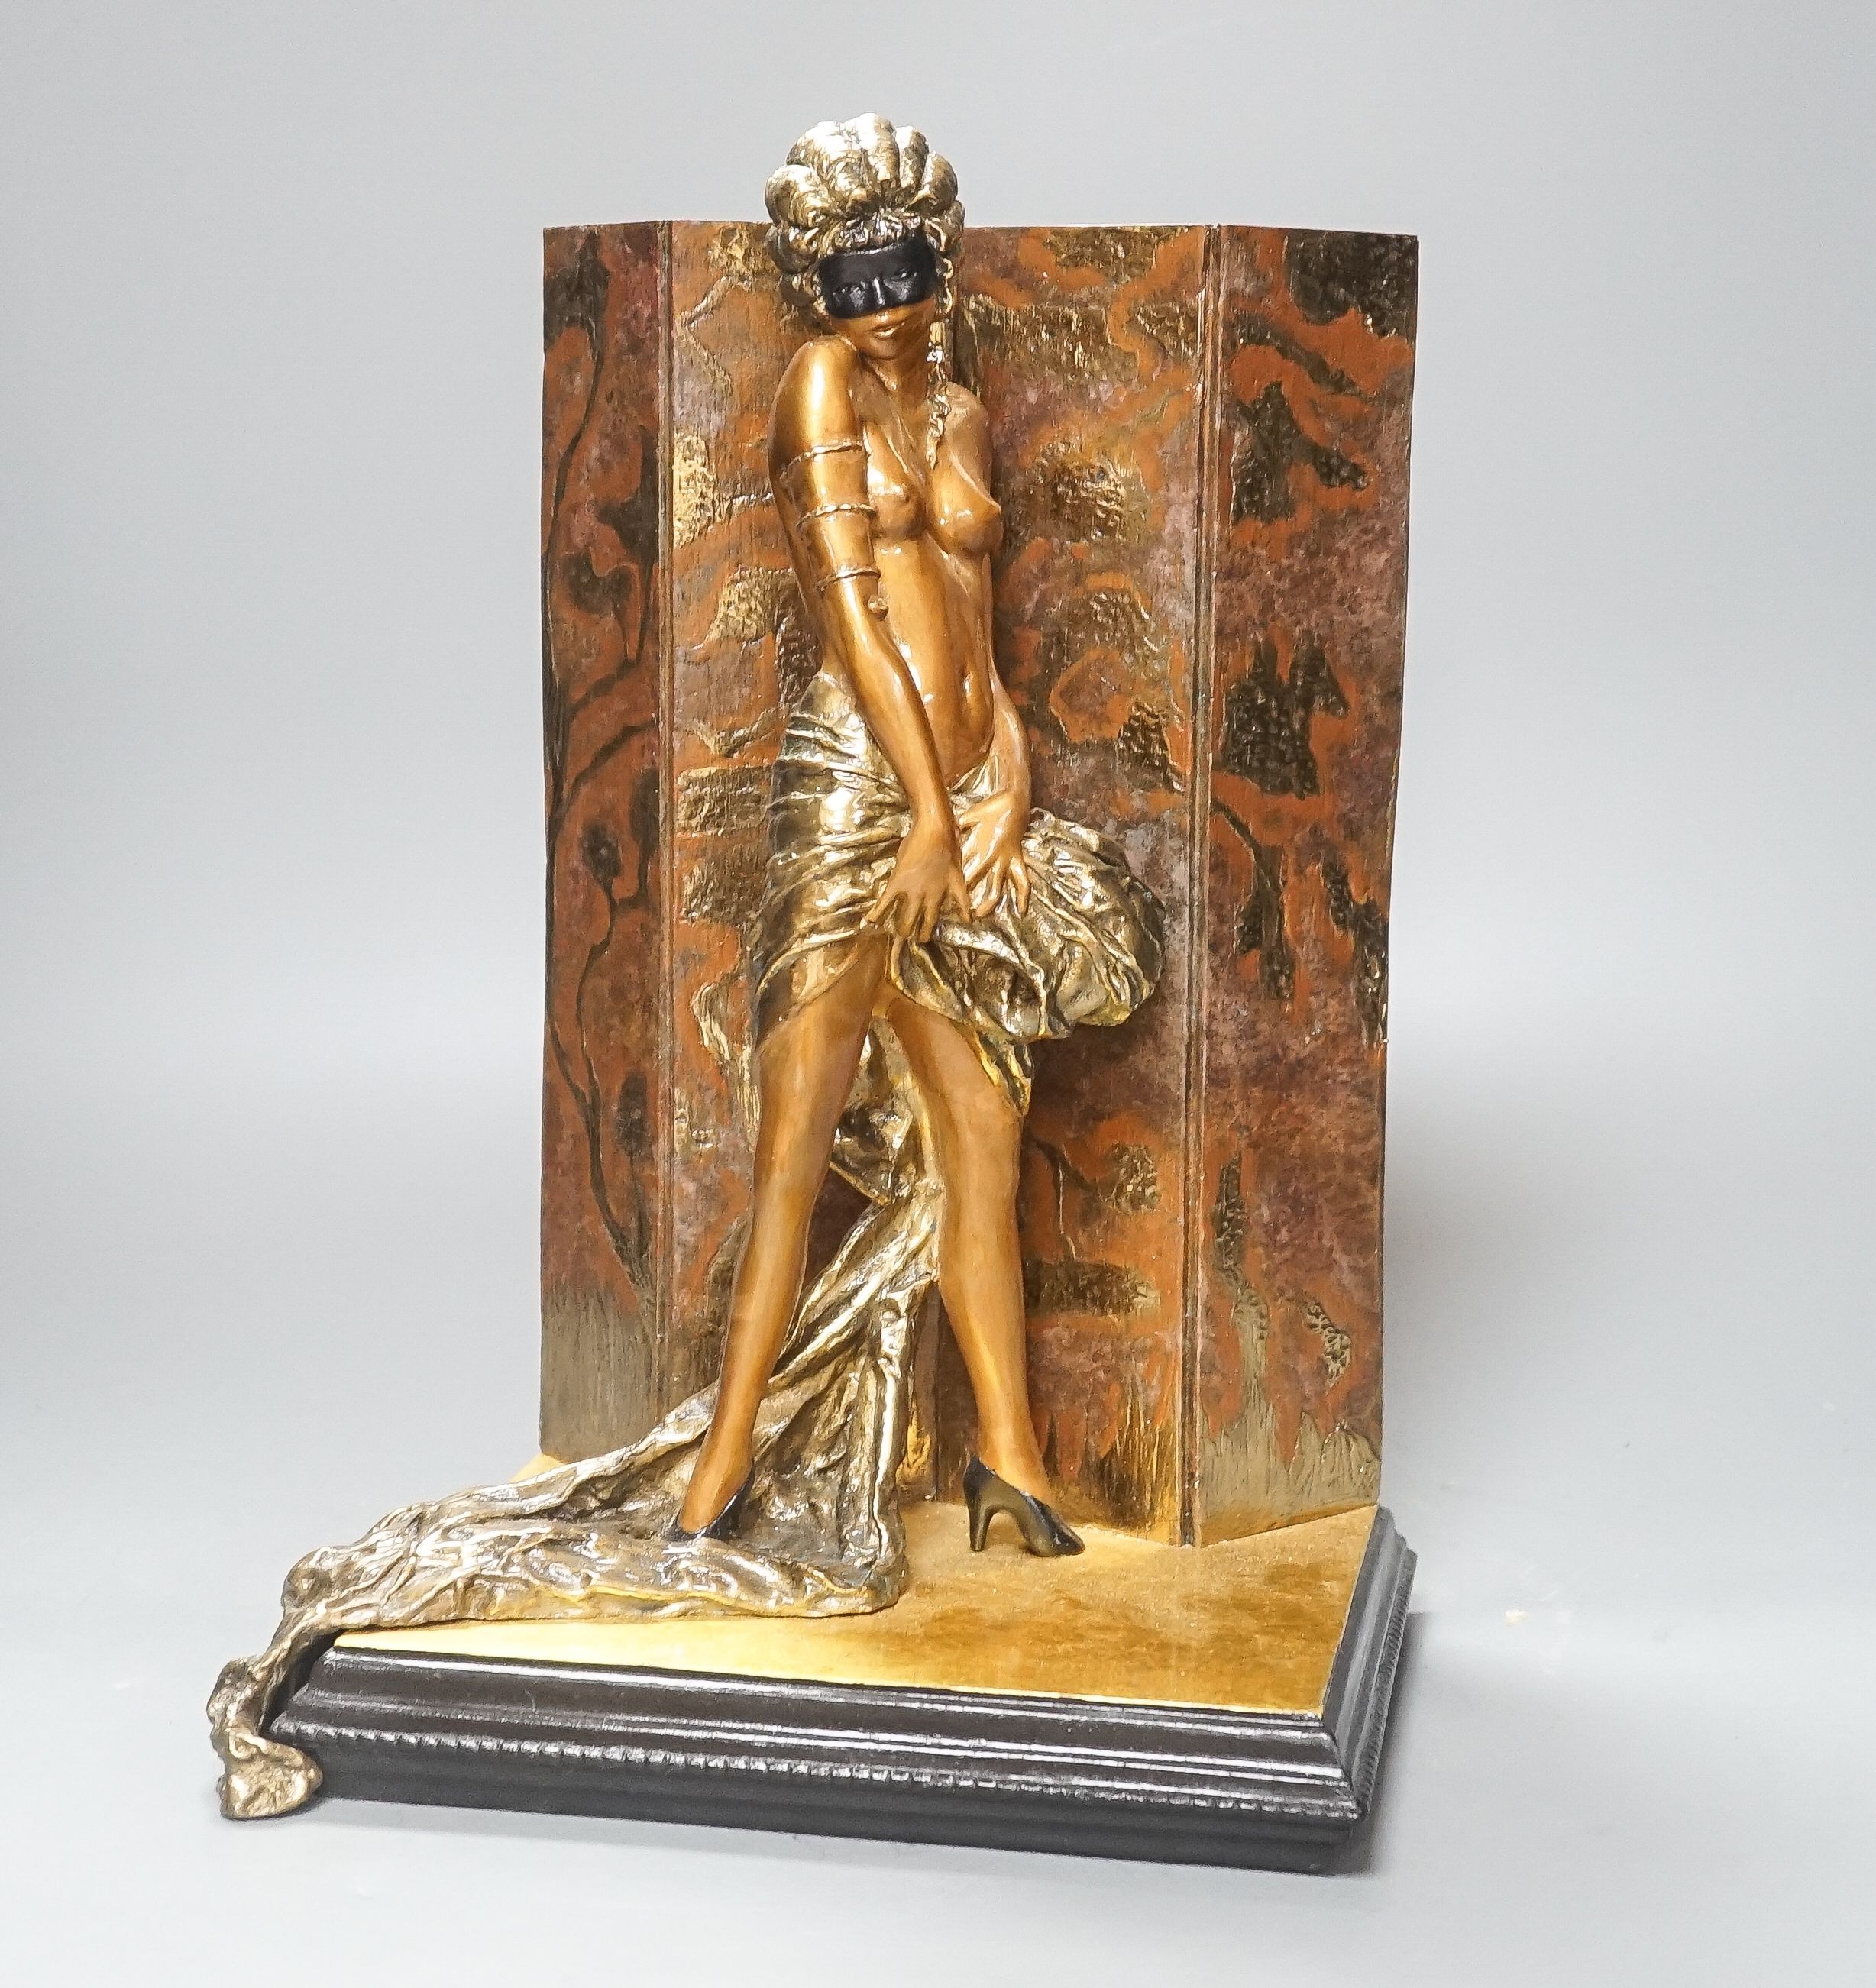 After Louis Icart a bronze sculpture, entitled “Masque Noir”, distributed by Rosenbaum Fine Art, 34 cms high.